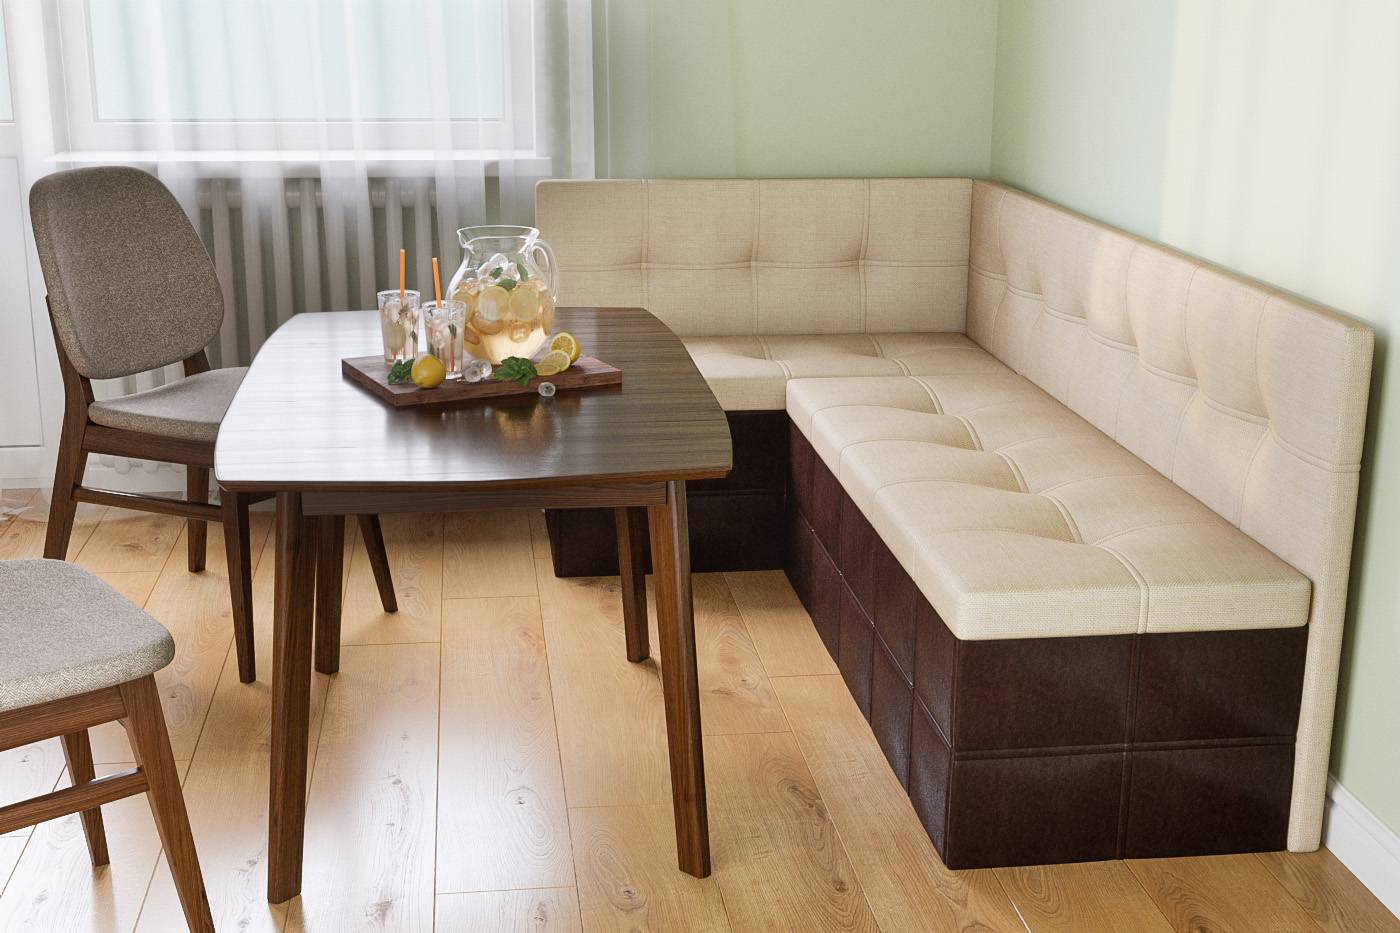 Планировка кухни с диваном: лучшие решения по оригинальному использованию диванов (120 фото)варианты планировки и дизайна